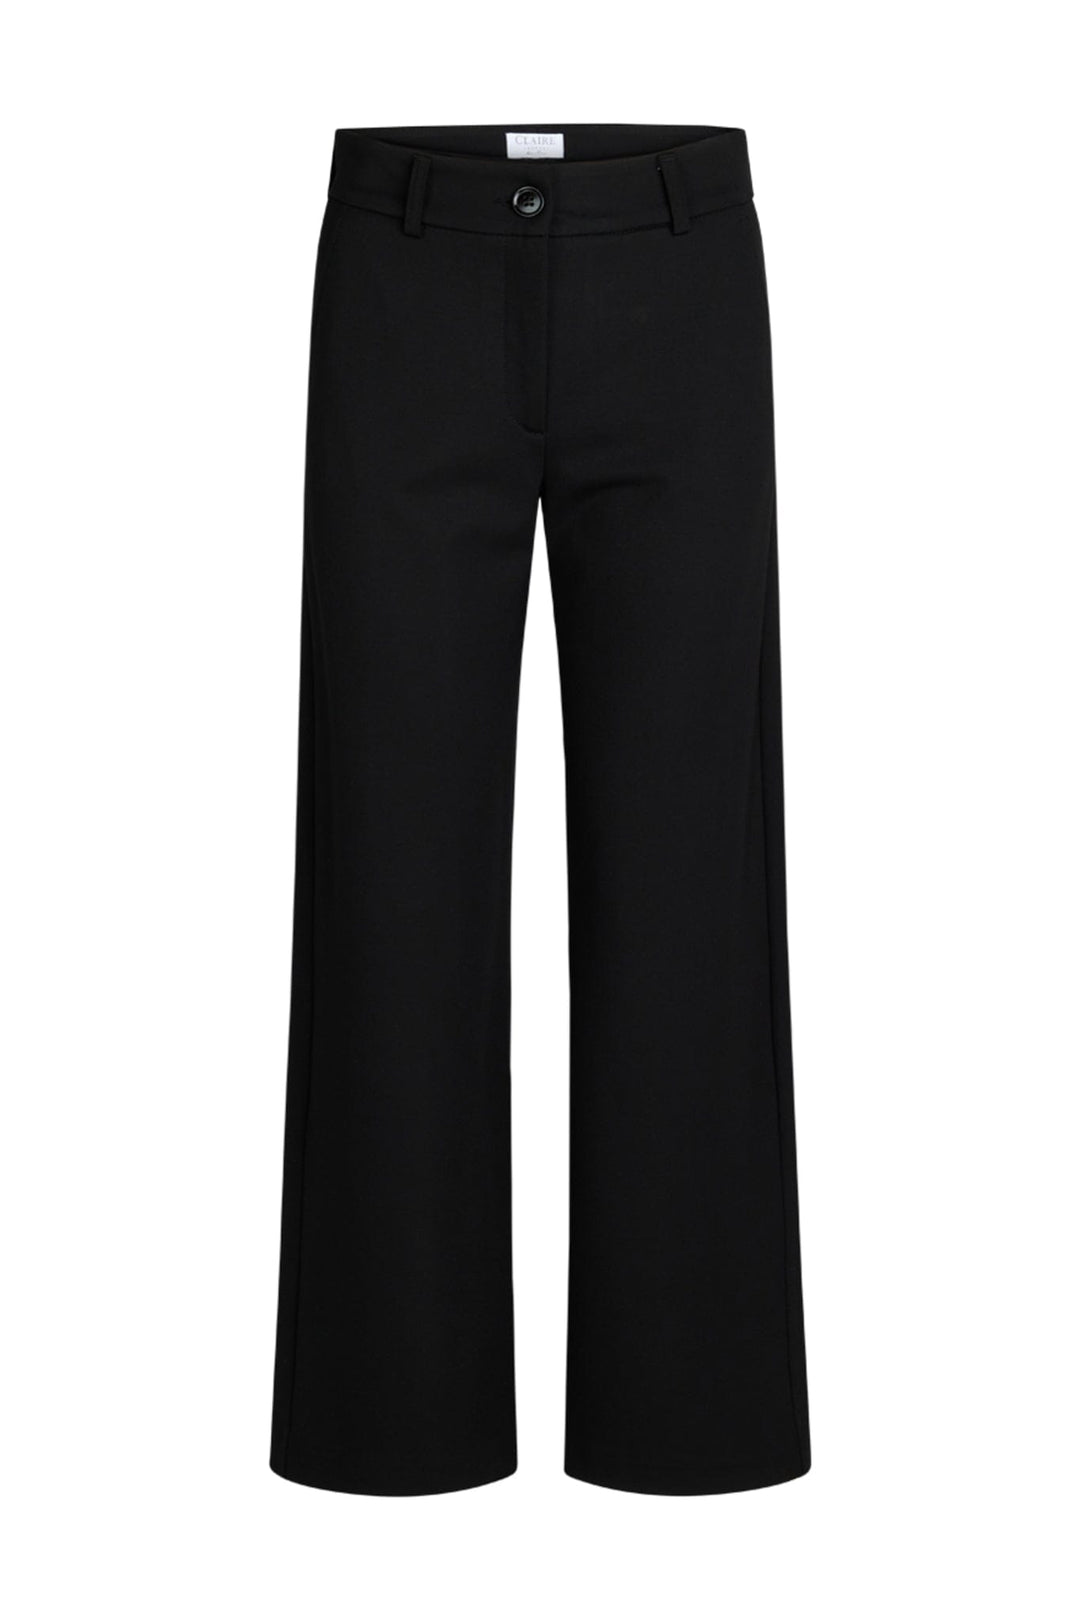 Tarita Trousers S Black | Bukser | Smuk - Dameklær på nett